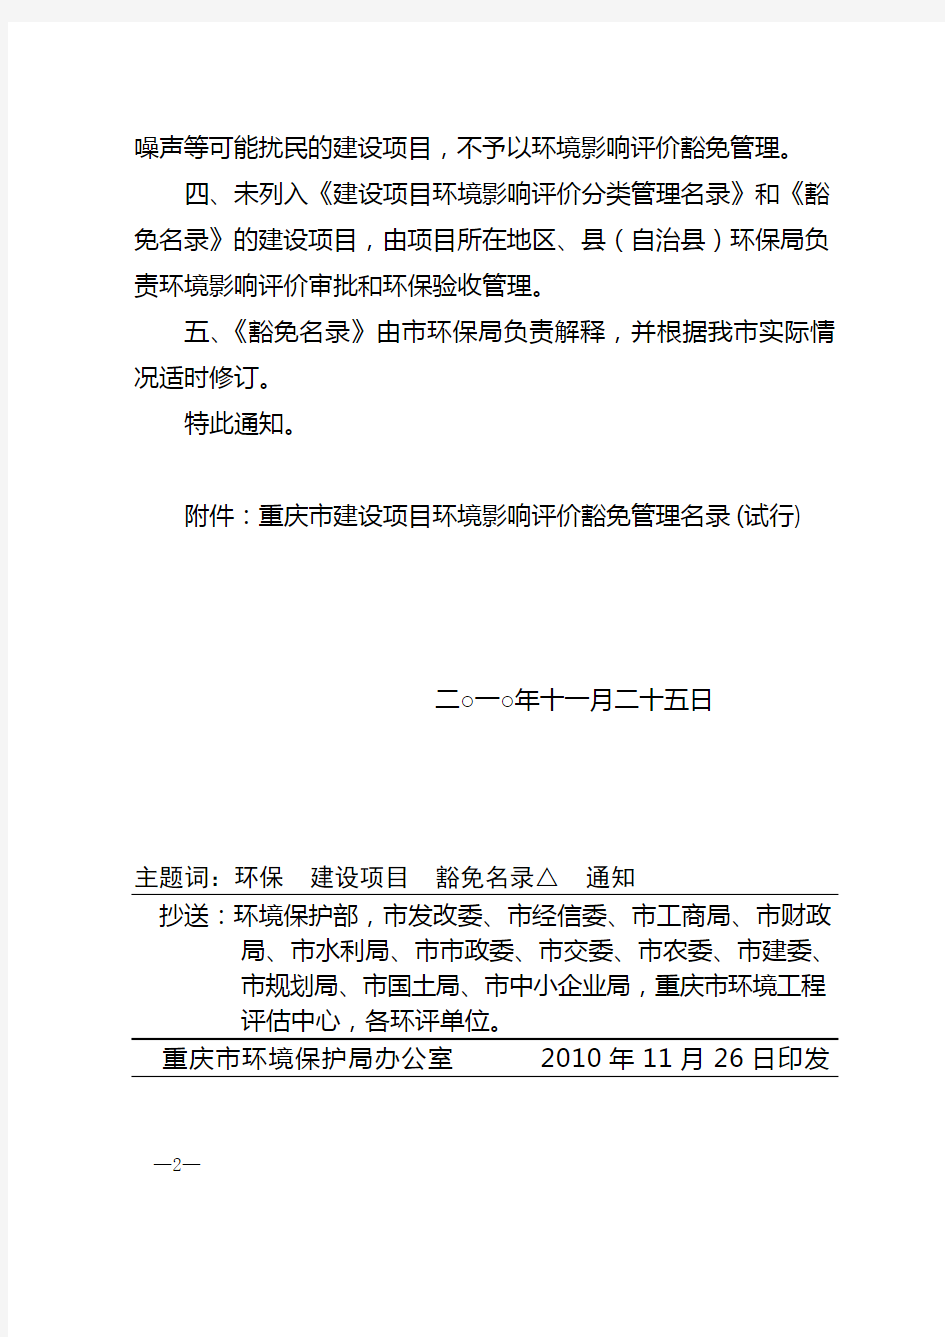 重庆市环境保护局关于印发《重庆市建设项目环境影响评价豁免管理名录(试行)》的通知